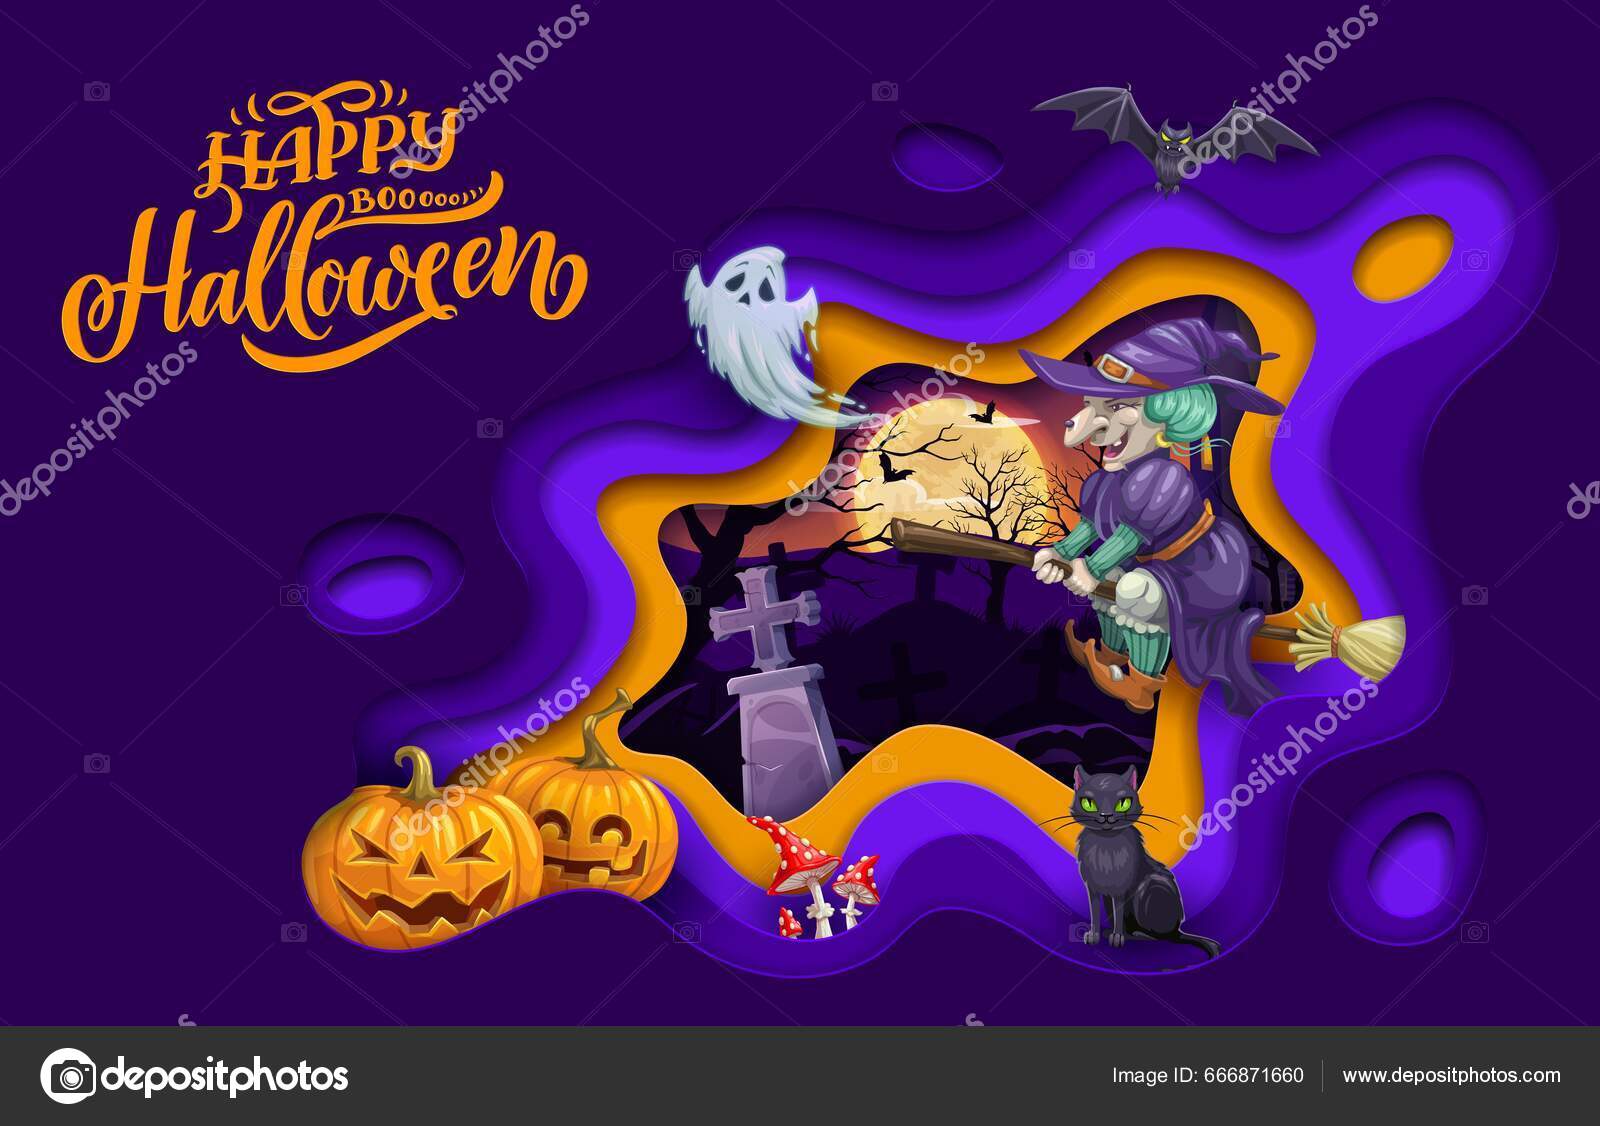 Corte de papel da festa de halloween, bruxa voando no céu